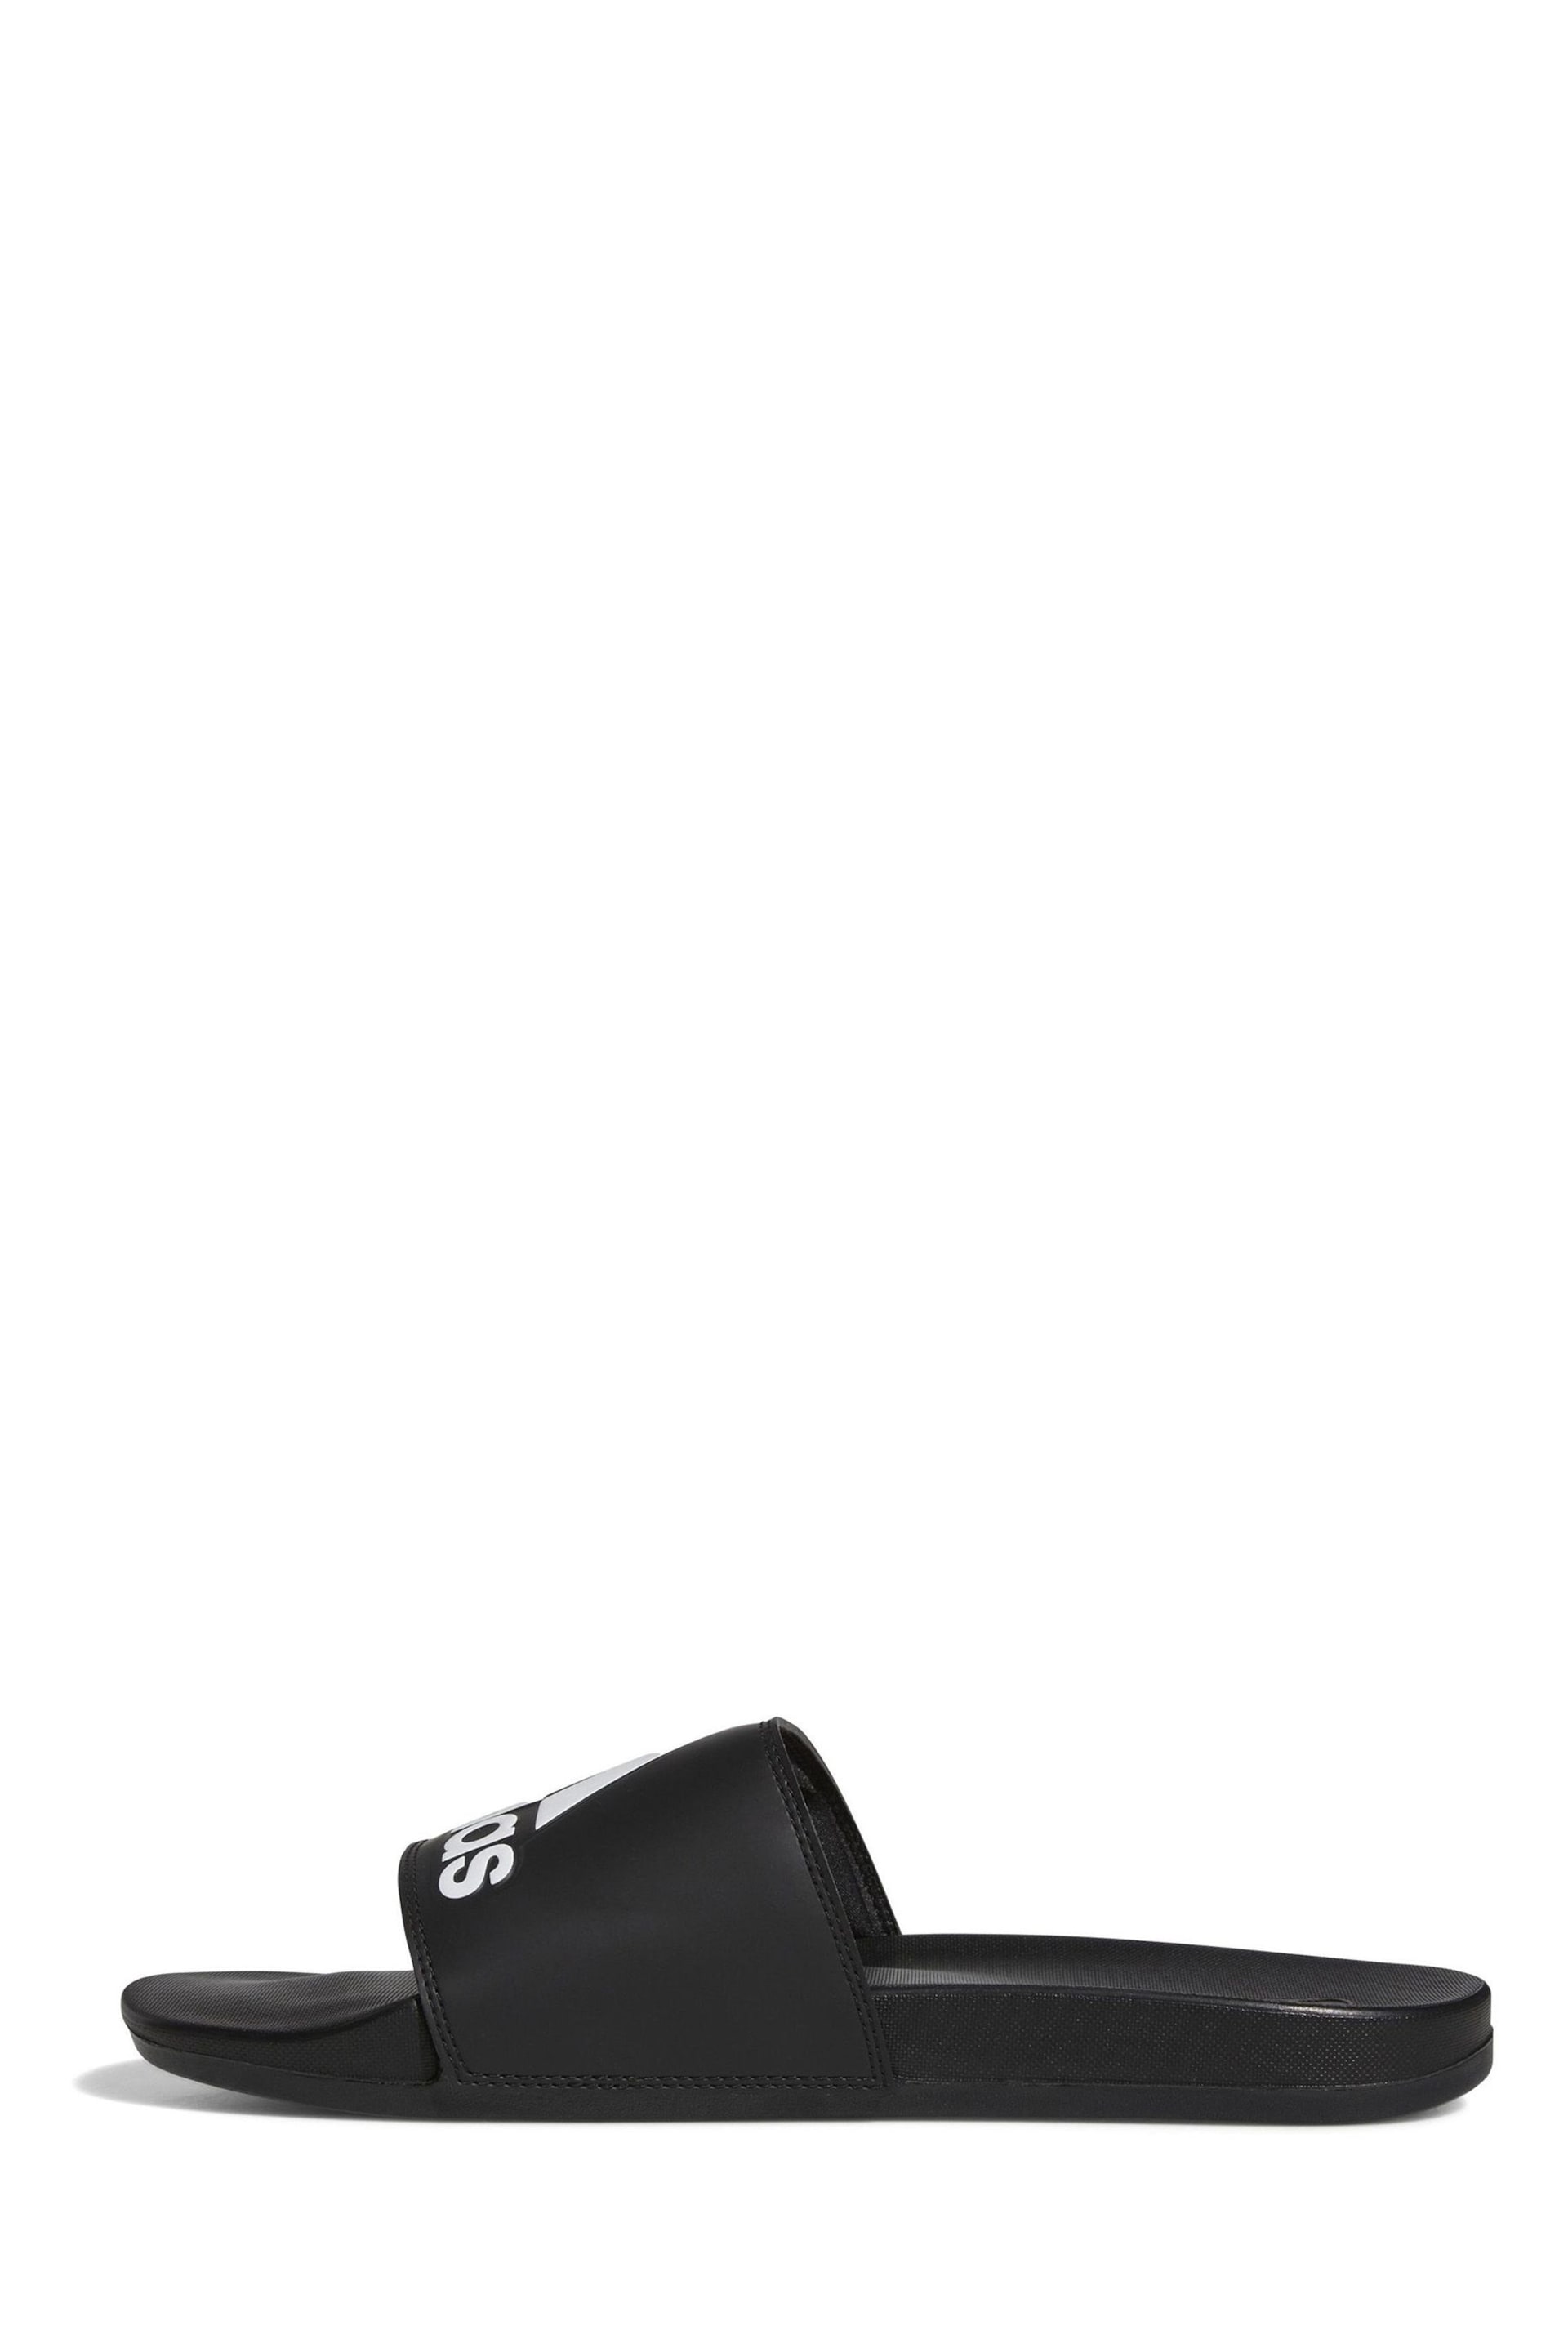 adidas Dark Black Sportswear Adilette Comfort Slides - Image 2 of 9